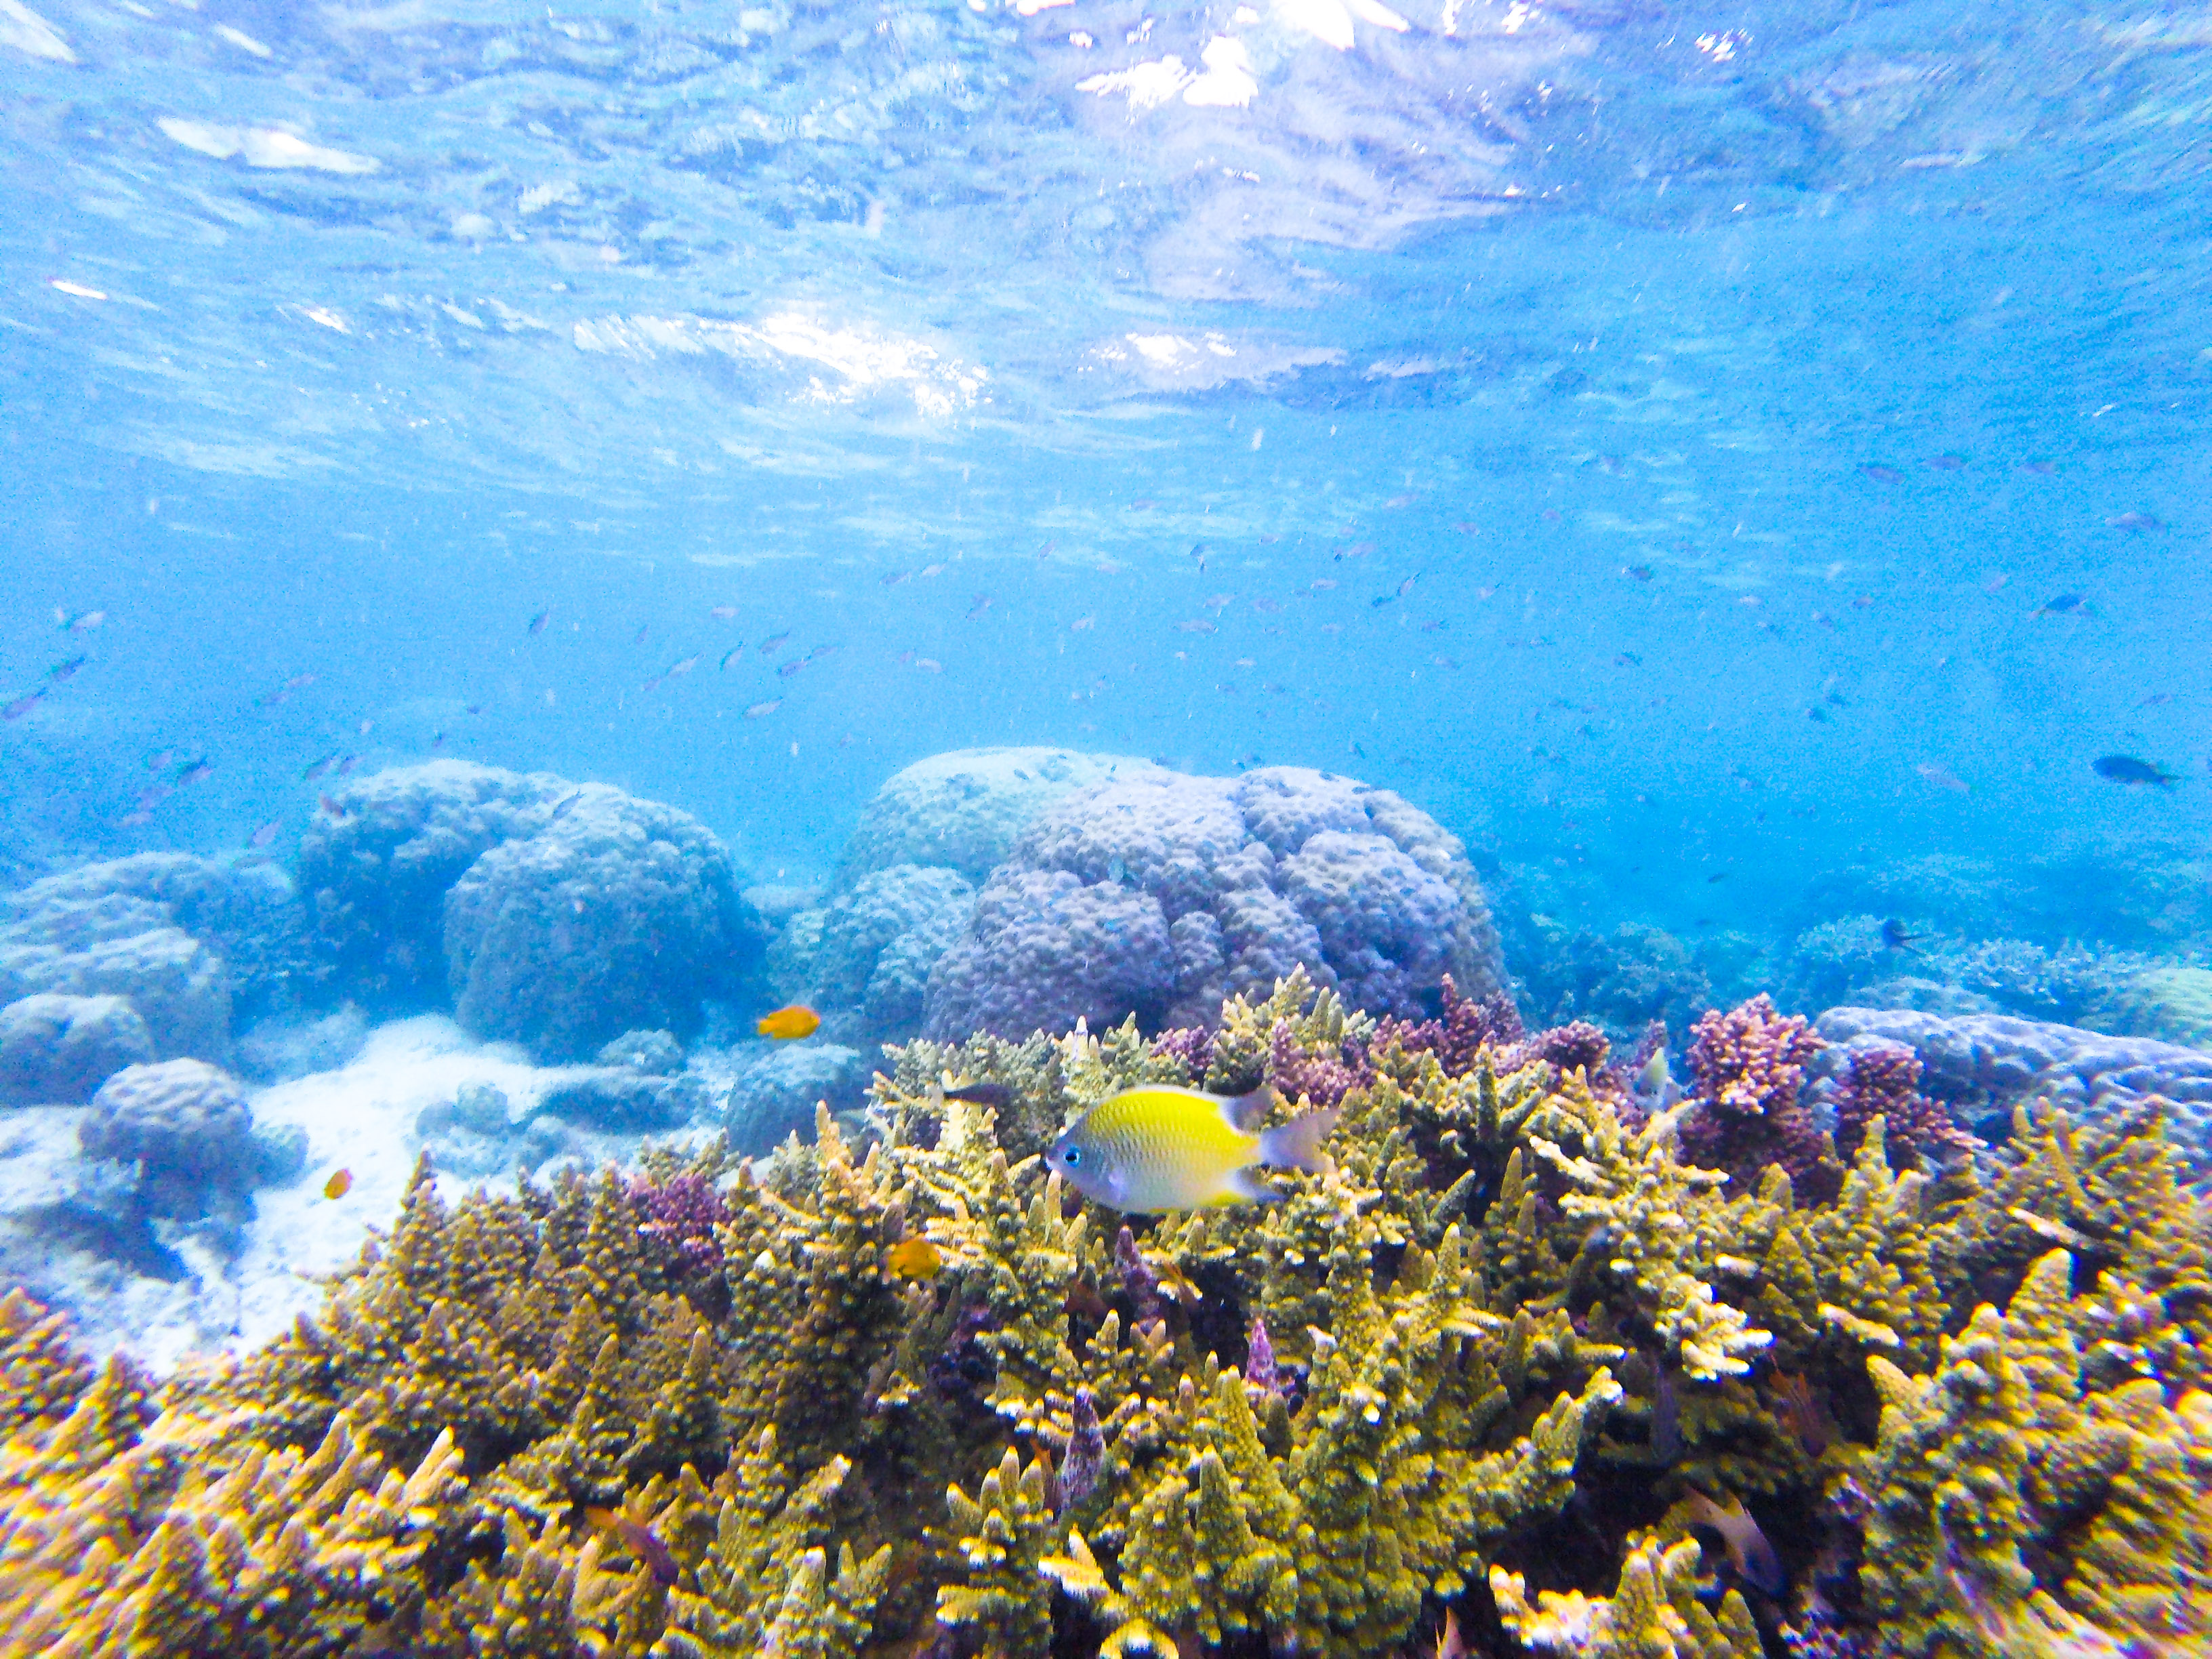 Philippines - Underwater landscape